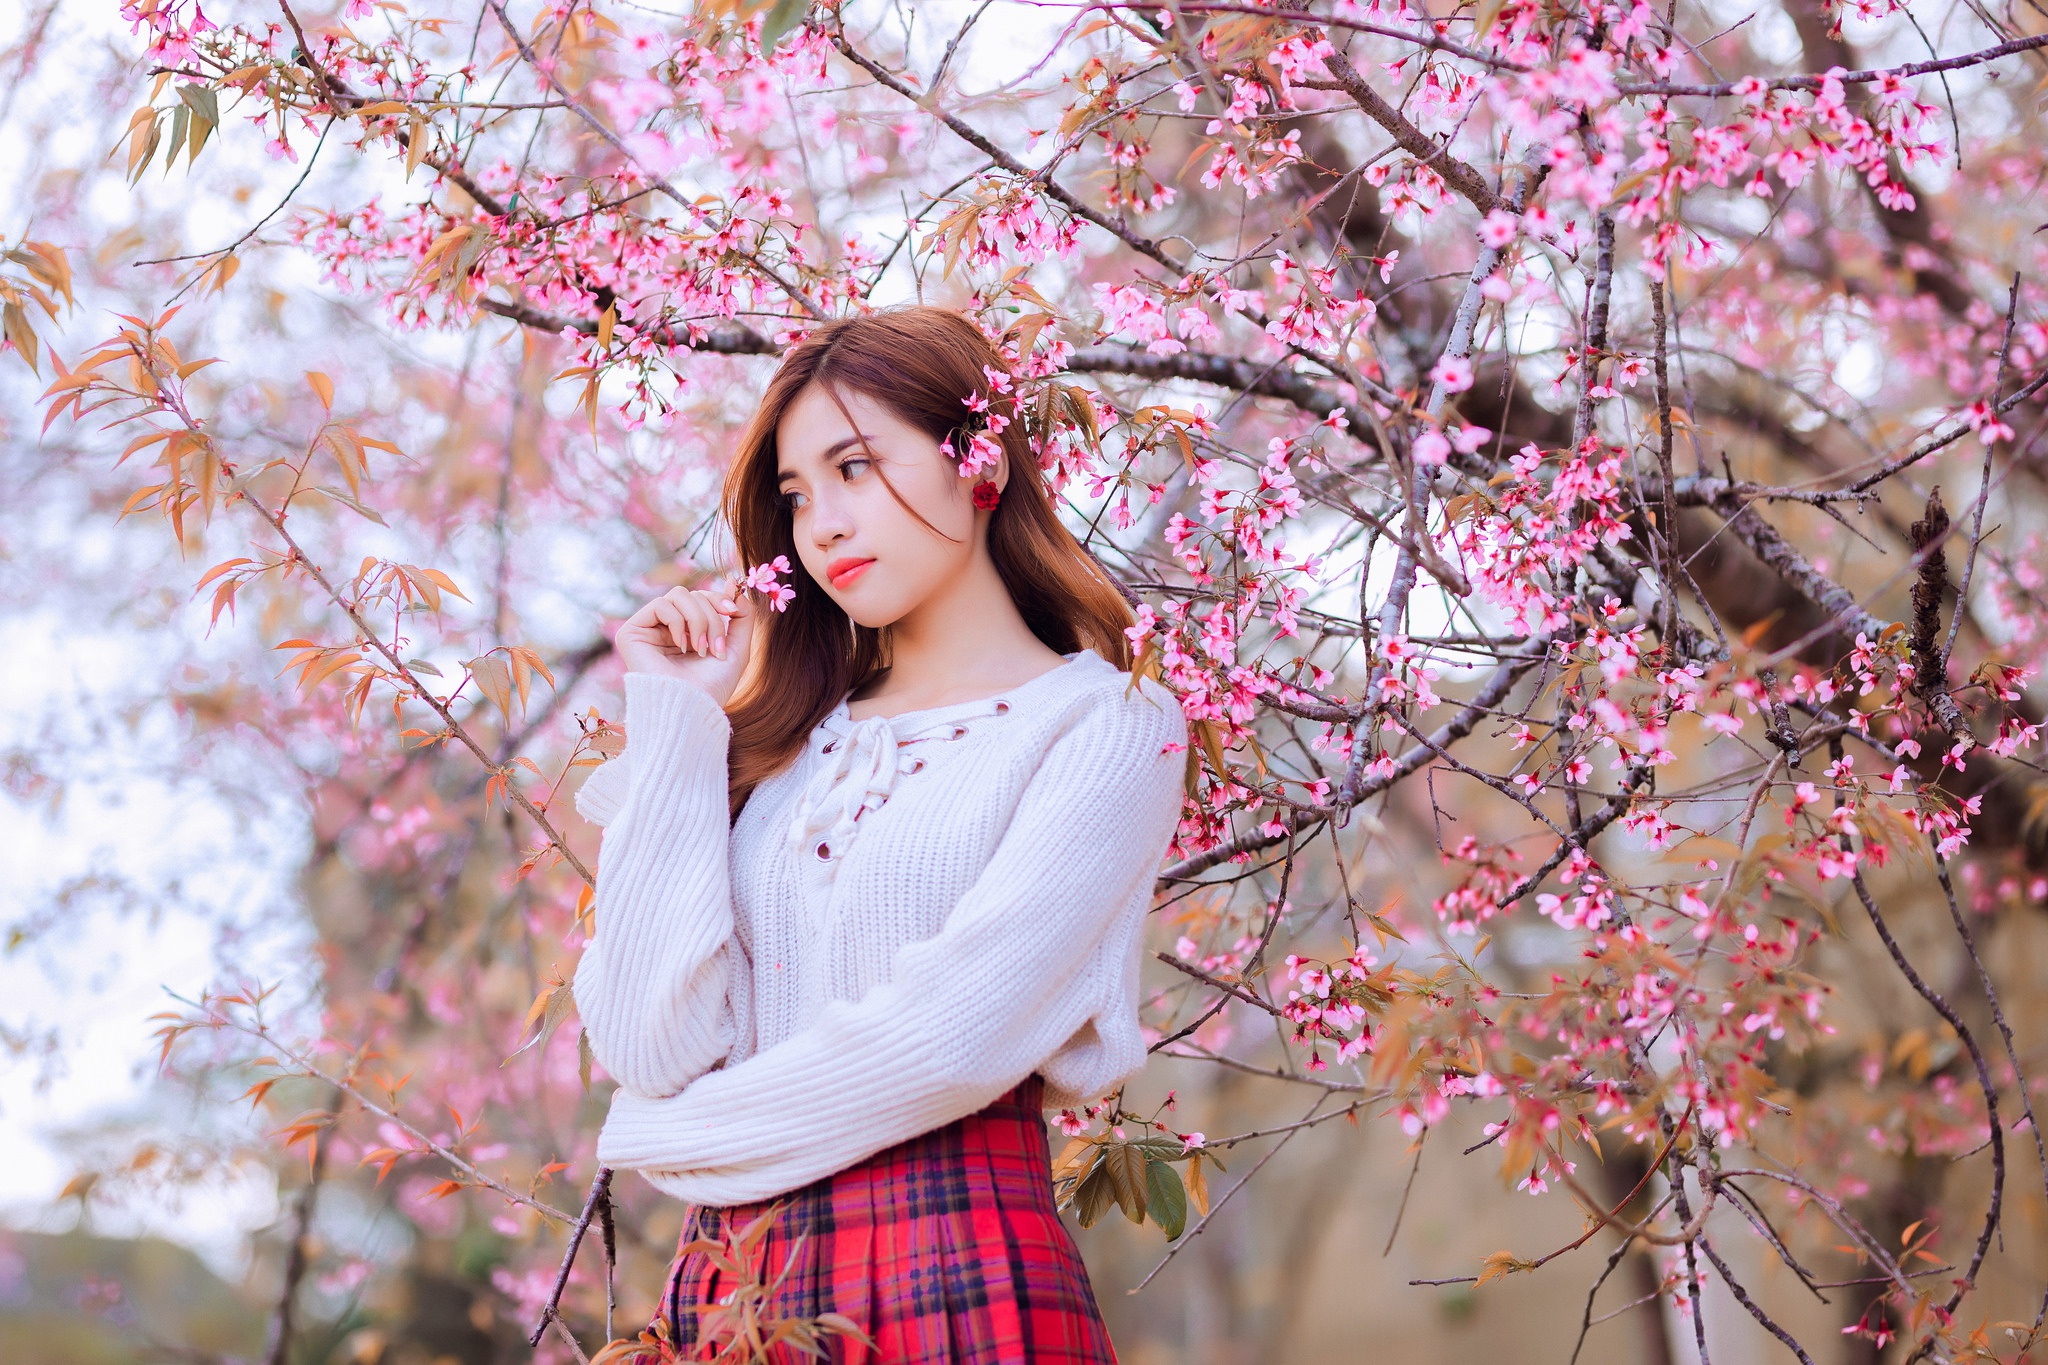 Asian Women Blossoms Women Outdoors Brunette Long Hair White Sweater Plaid Skirt Tartan Skirt Lookin 2048x1365